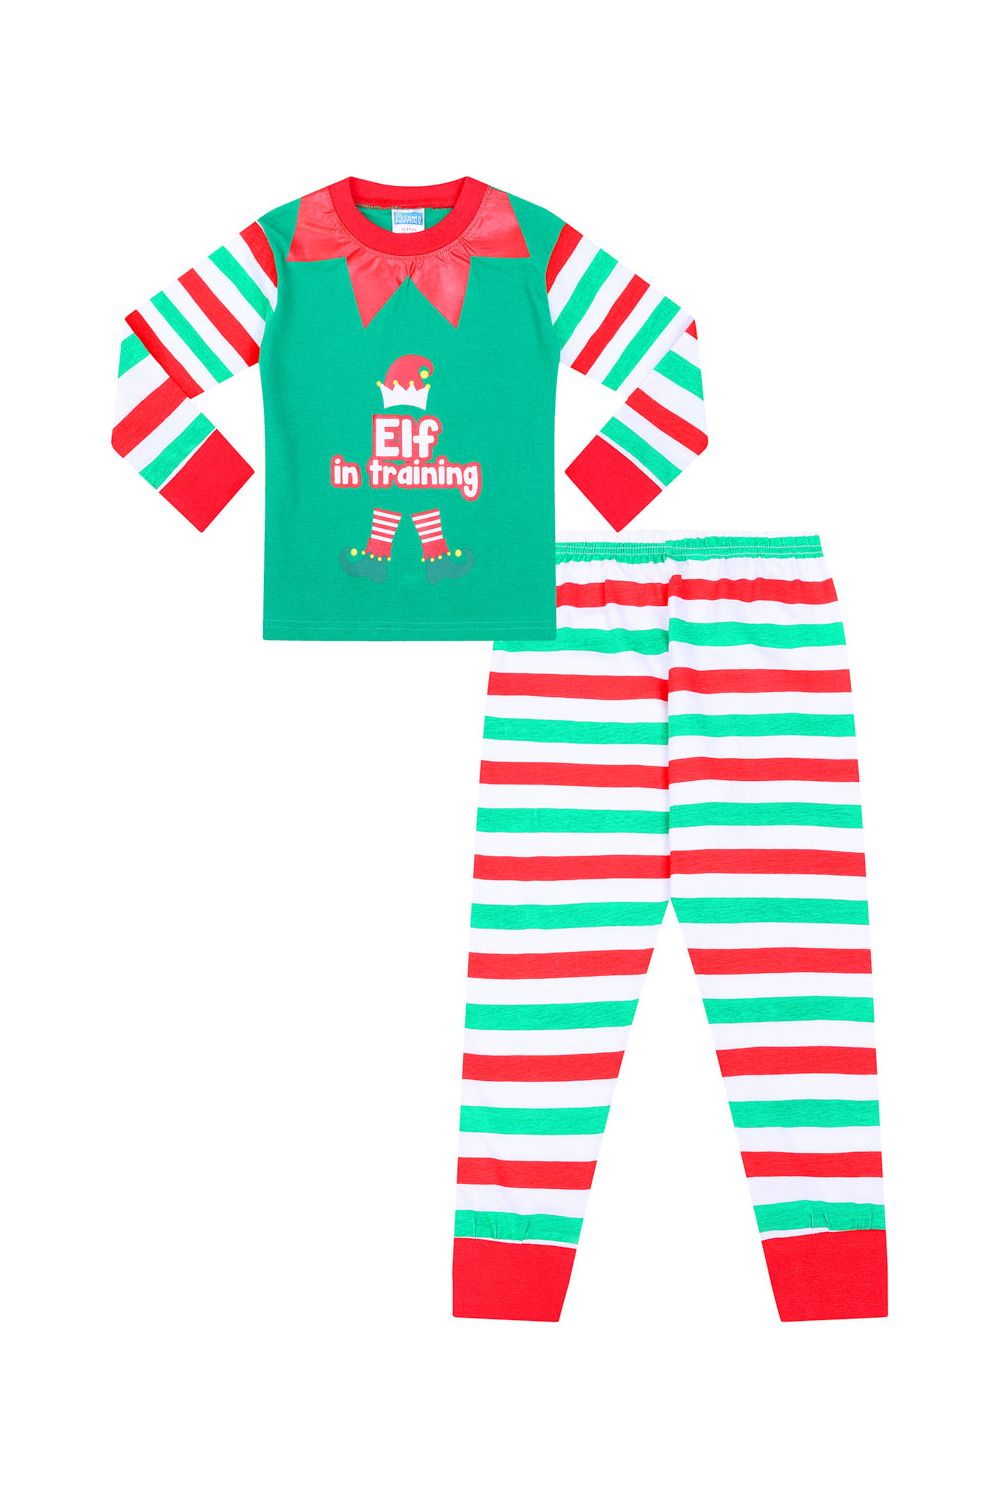 Elf in Training Christmas Matching Family Pyjamas - Pyjamas.com